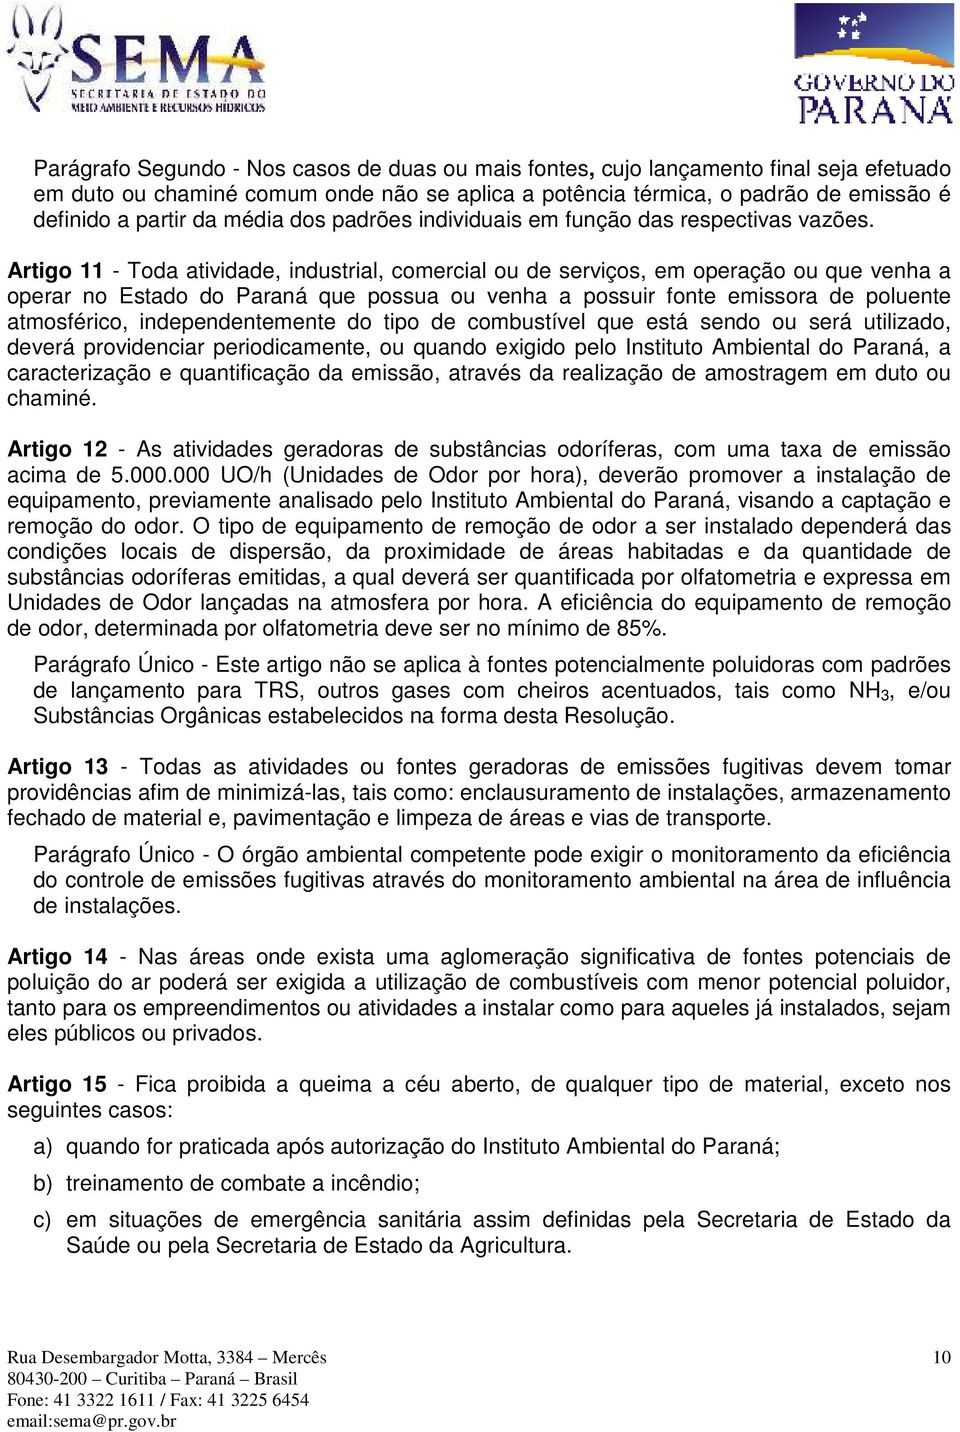 Artigo 11 - Toda atividade, industrial, comercial ou de serviços, em operação ou que venha a operar no Estado do Paraná que possua ou venha a possuir fonte emissora de poluente atmosférico,